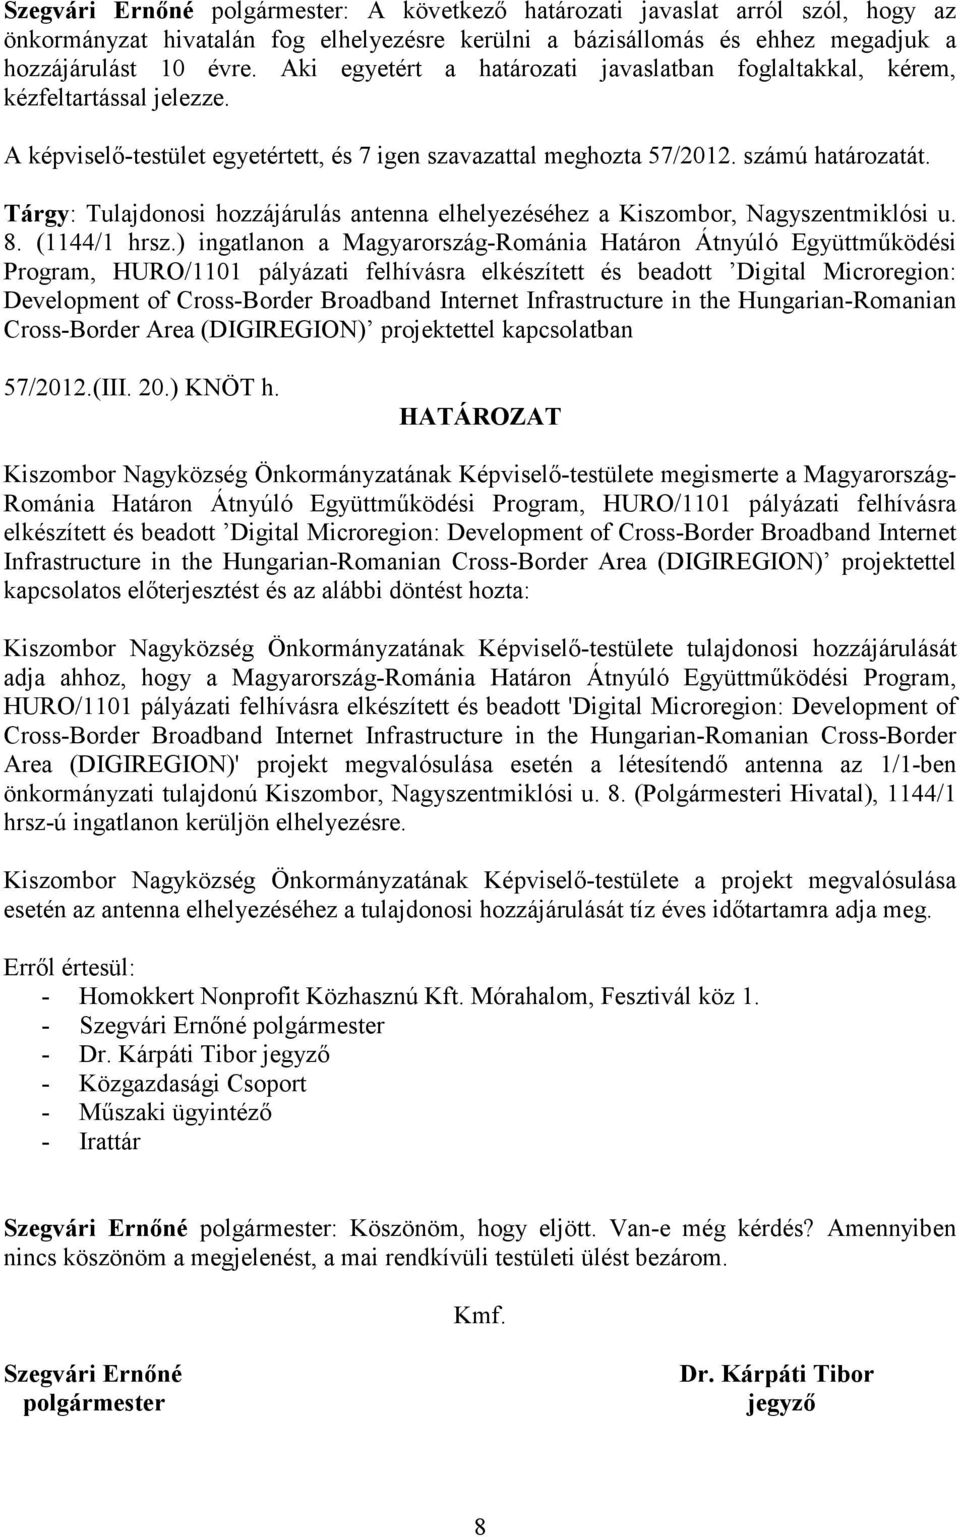 Tárgy: Tulajdonosi hozzájárulás antenna elhelyezéséhez a Kiszombor, Nagyszentmiklósi u. 8. (1144/1 hrsz.